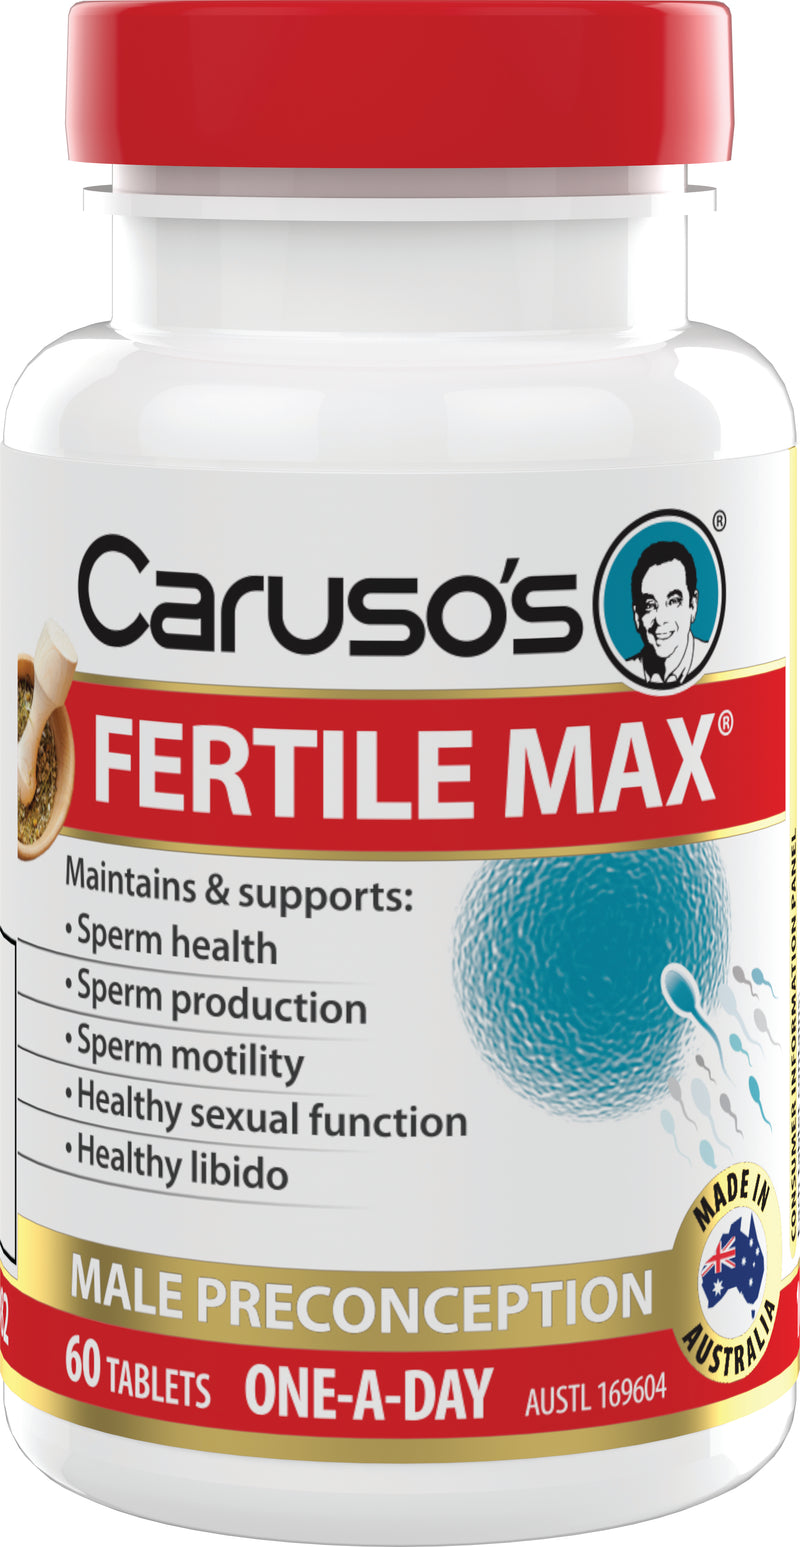 Caruso's Fertile MAX 60 Tablets